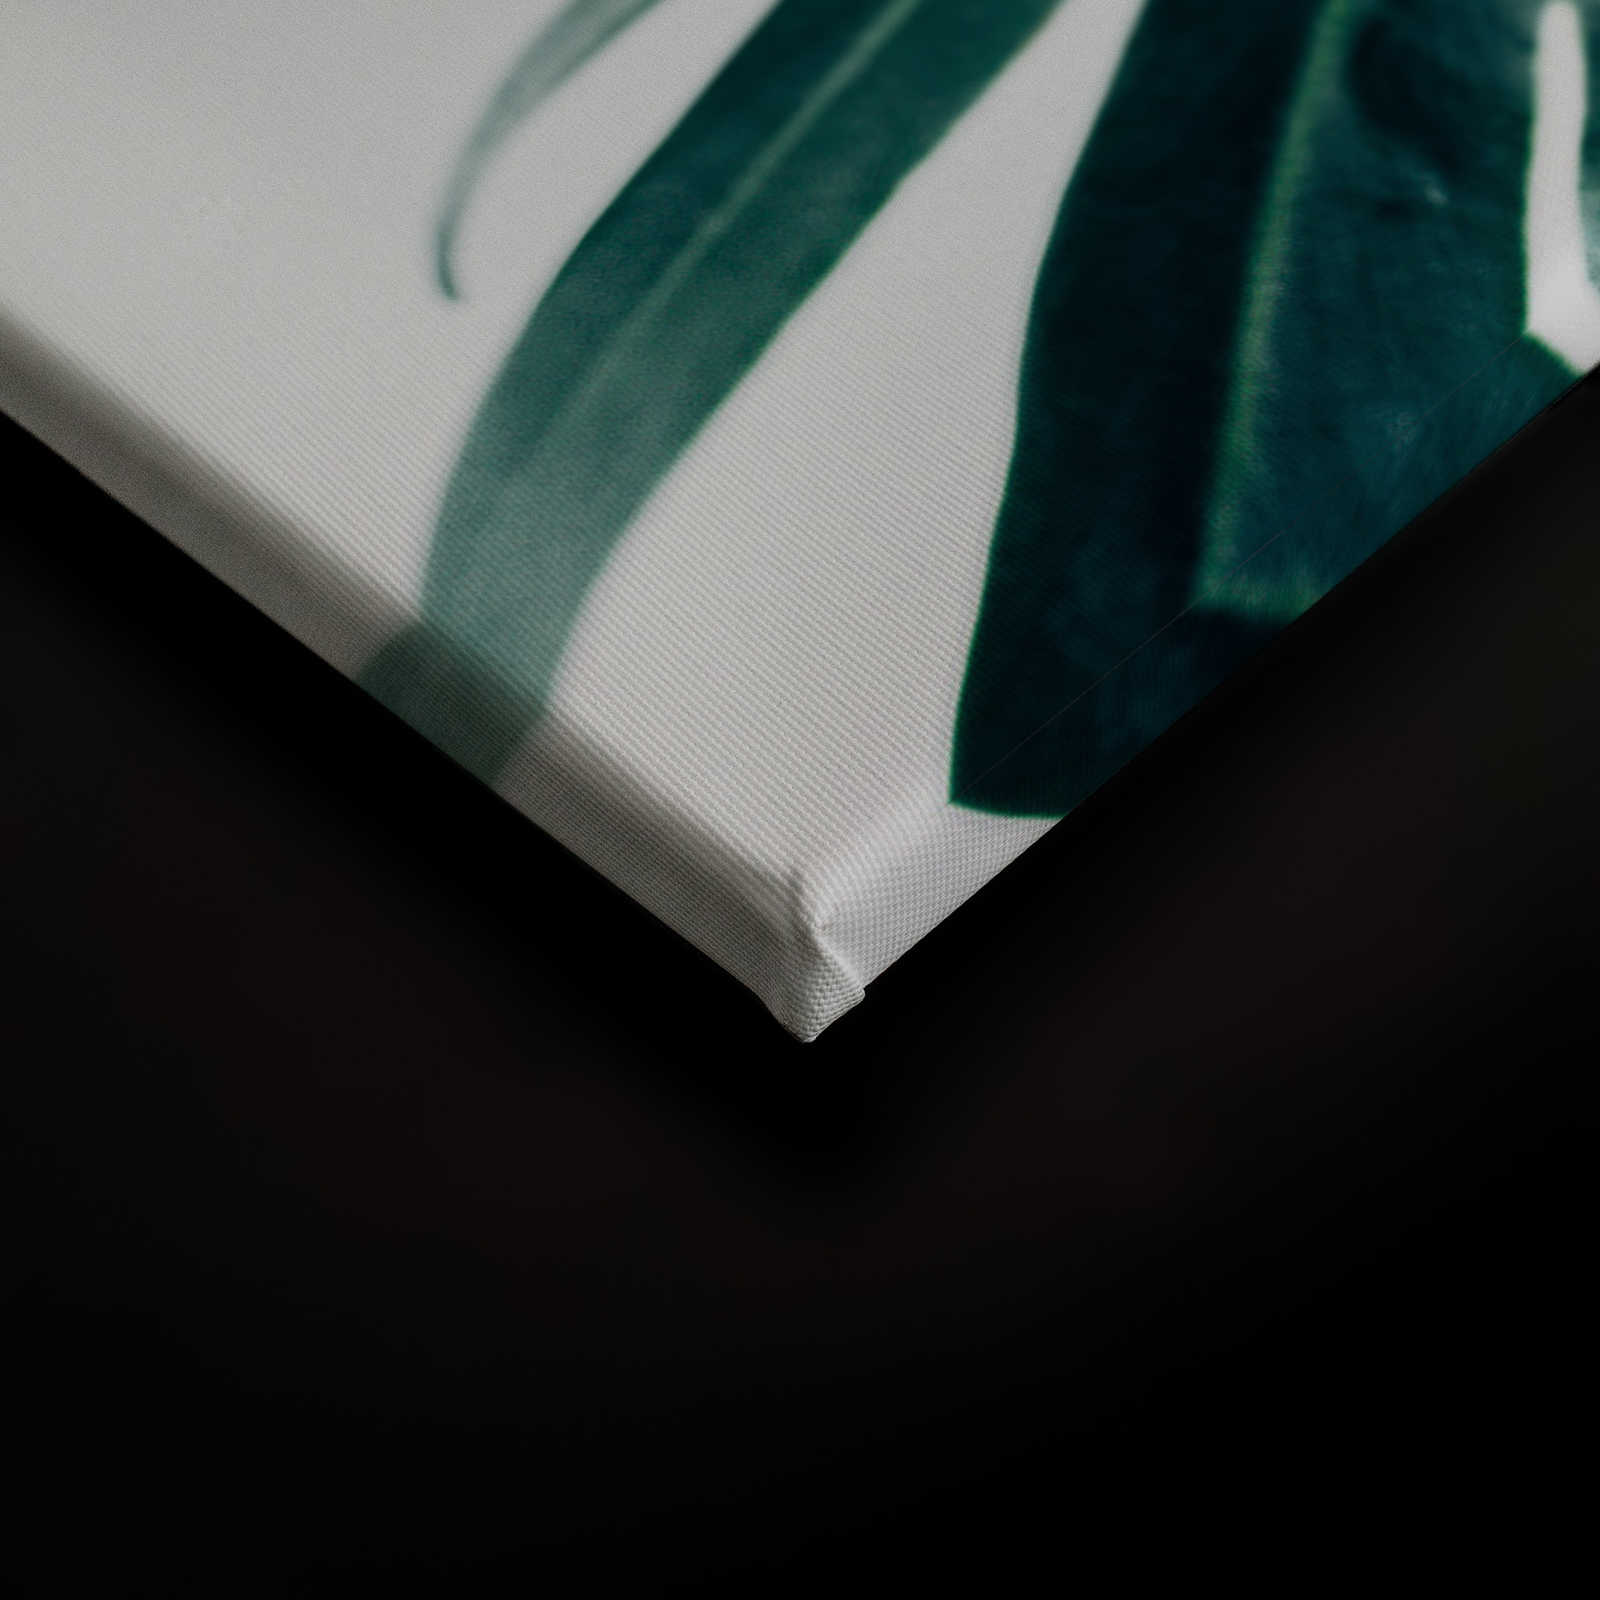             Canvas schilderij tropisch oerwoudblad close-up - 0,90 m x 0,60 m
        